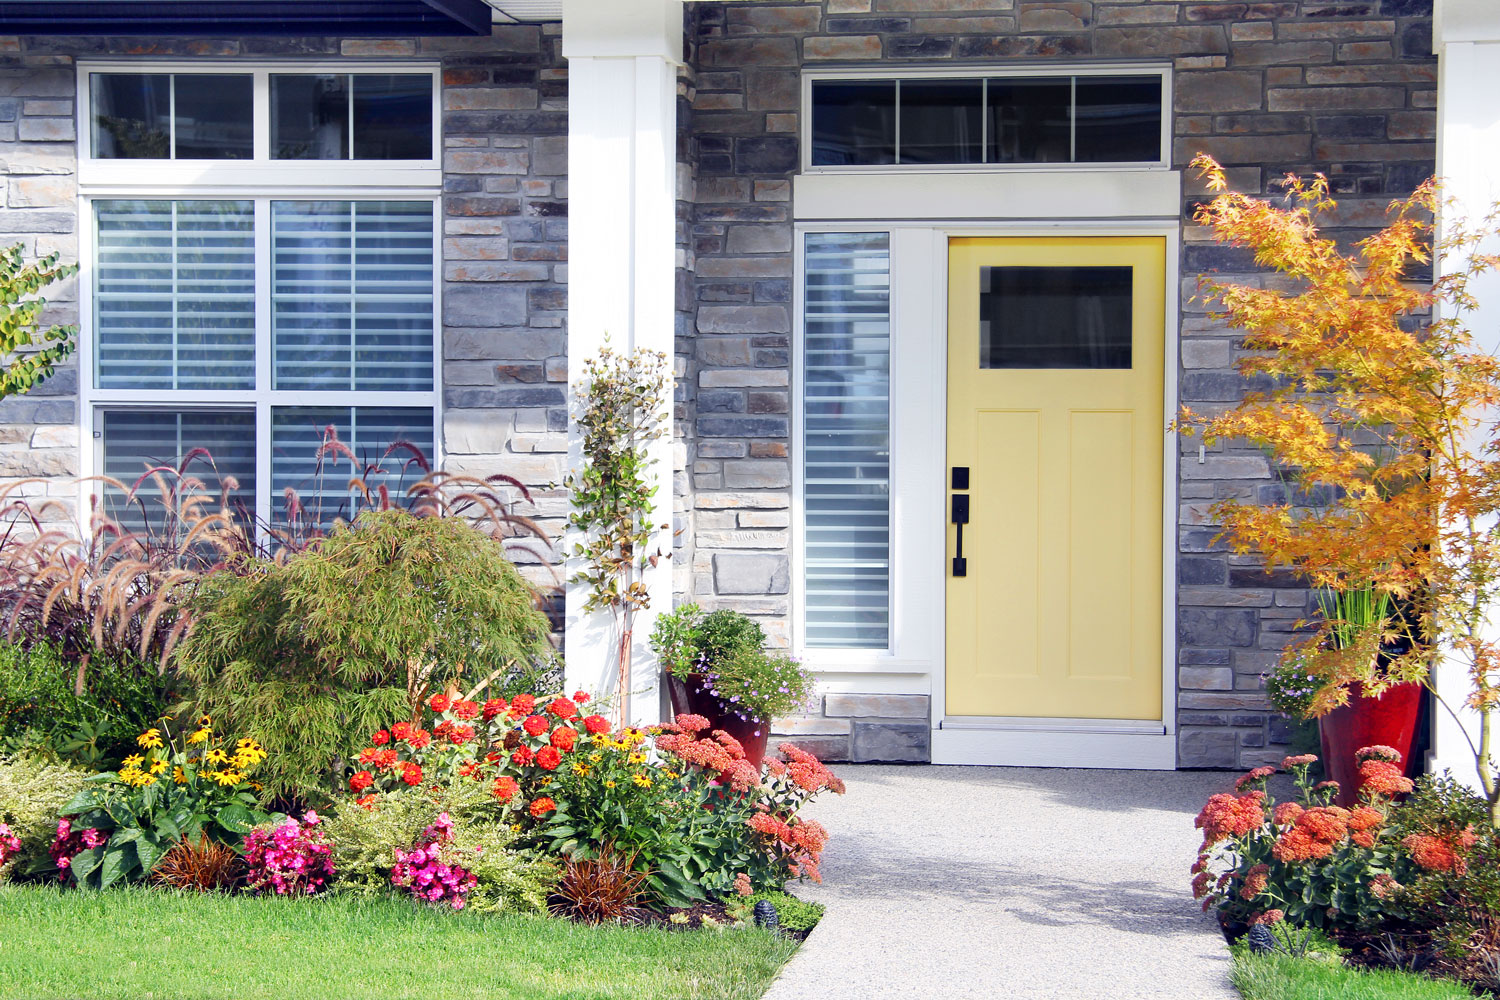 Шикарная лужайка современного дома с цветками и желтой входной дверью